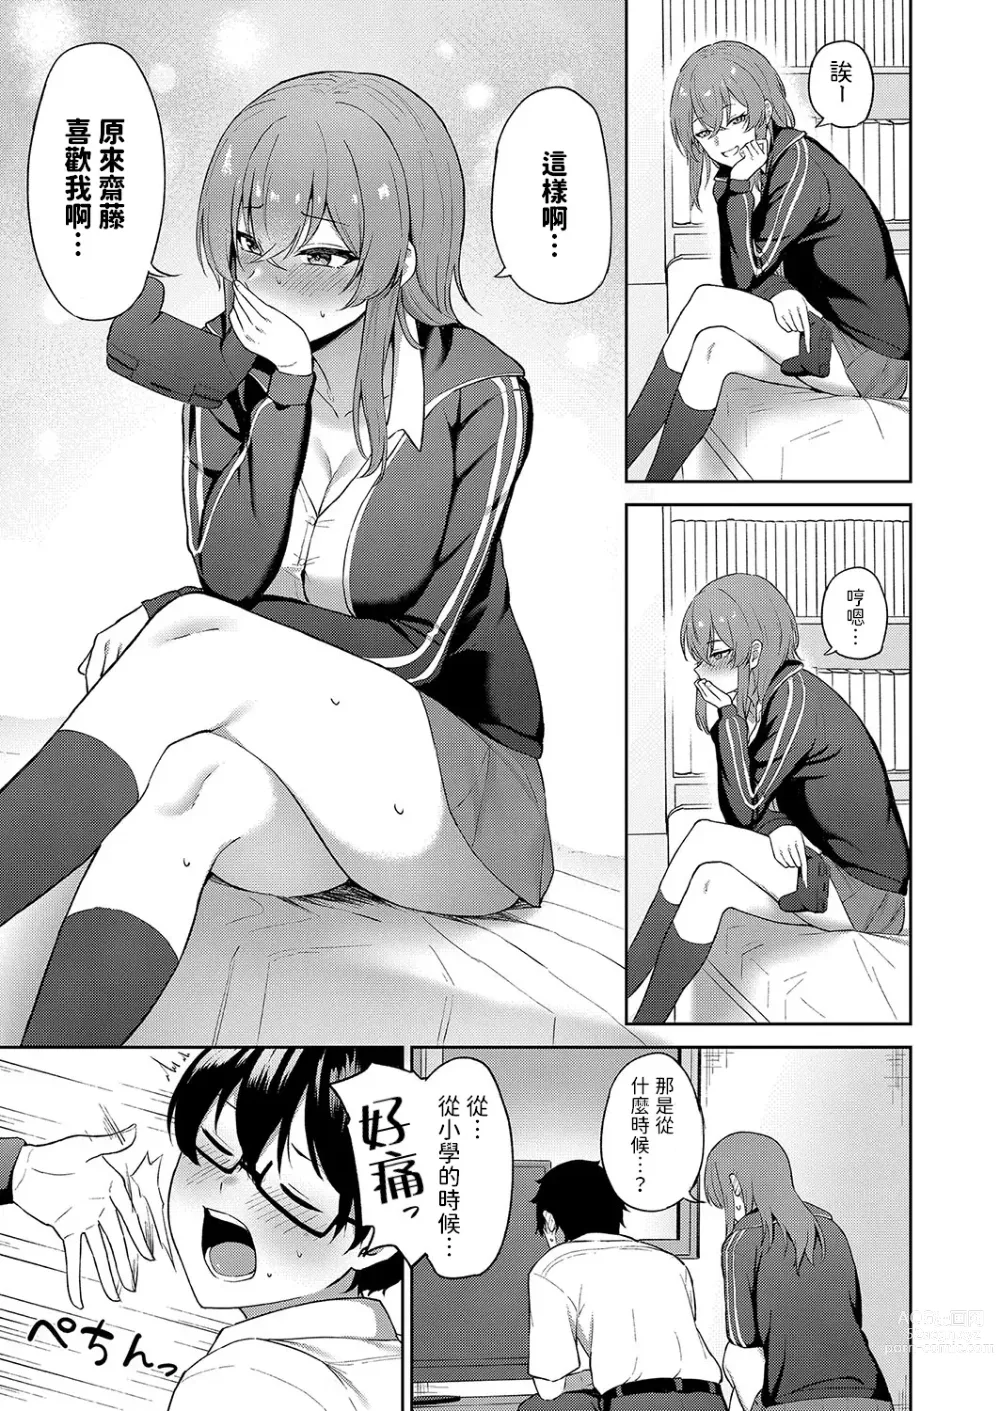 Page 5 of manga Kokuhaku wa Toutotsu ni